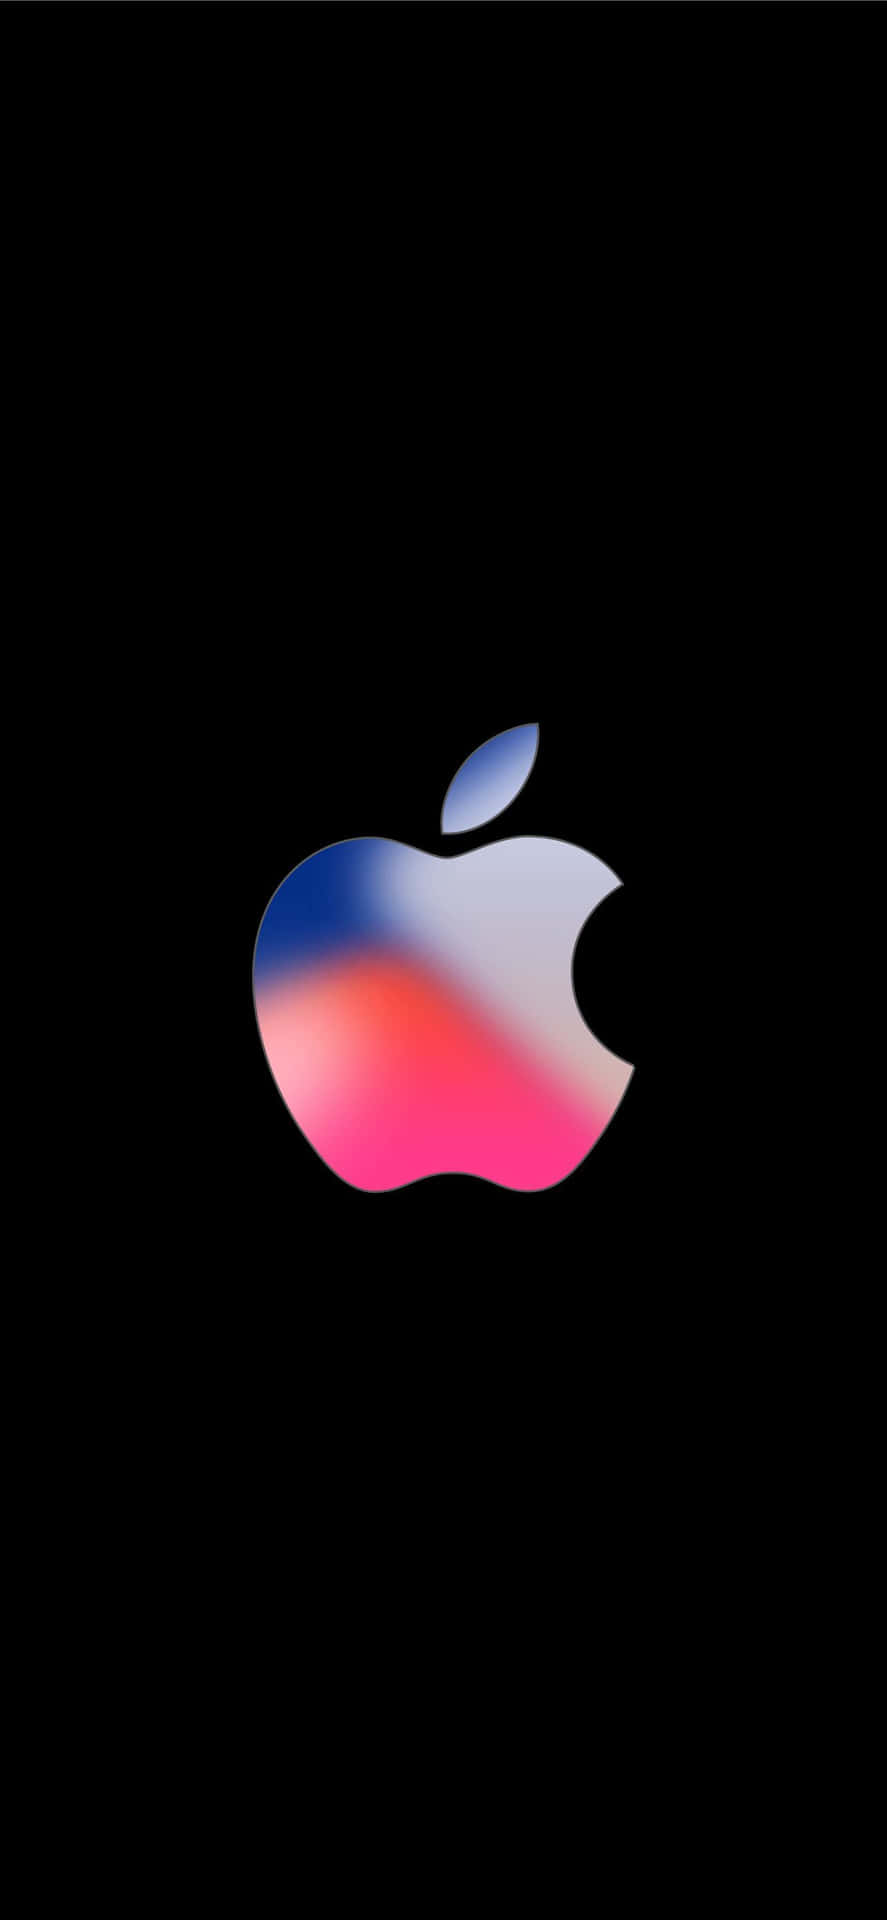 Blauund Pinkes Logo: Erstaunliche Apple Hd Iphone Wallpaper